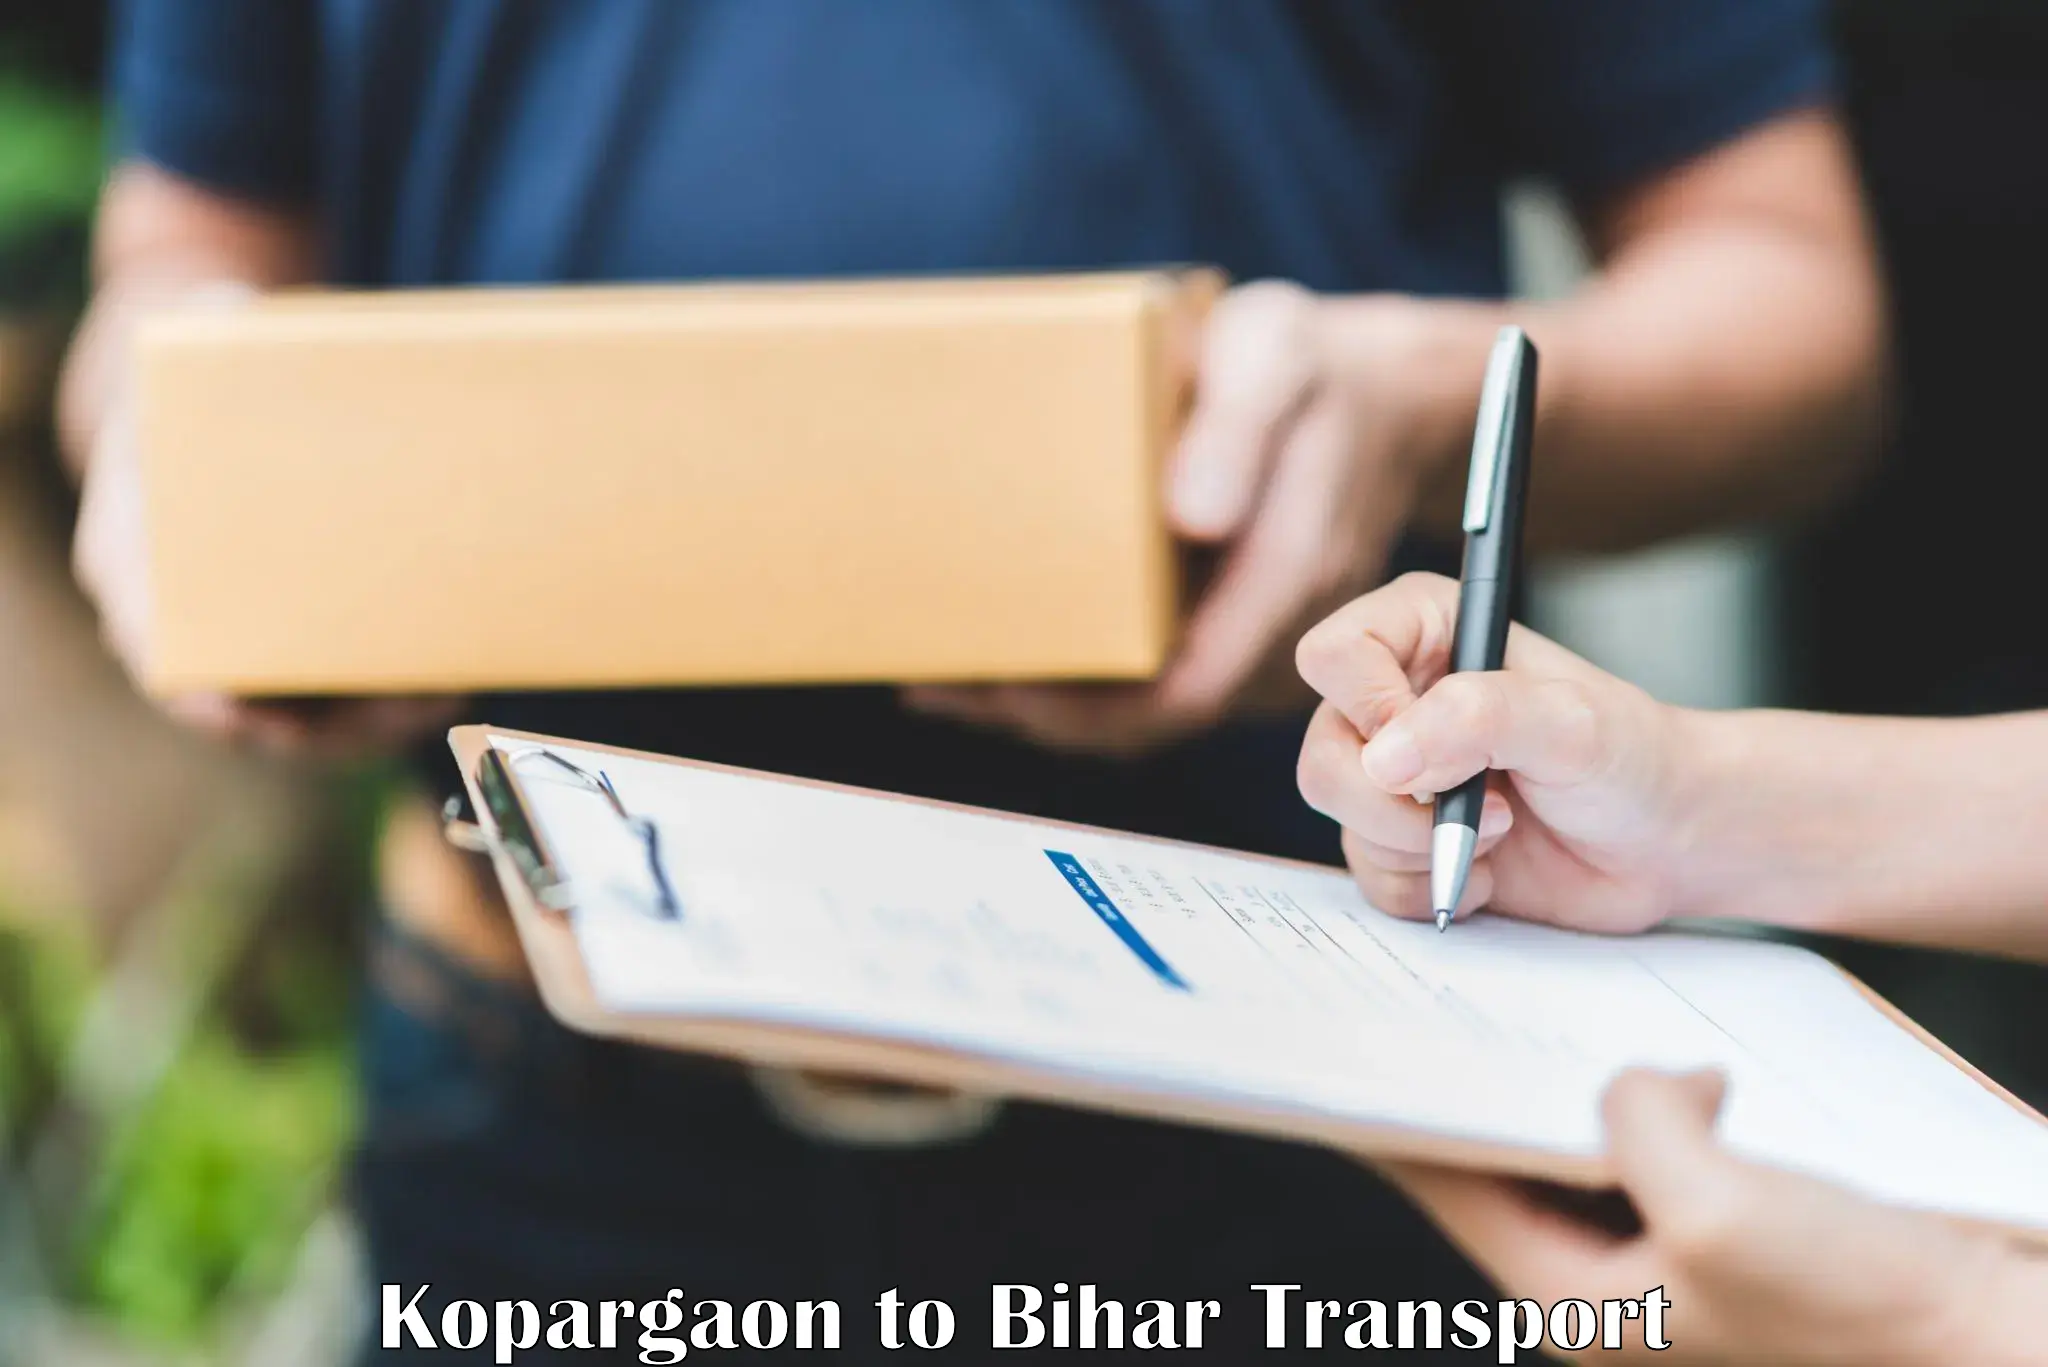 Door to door transport services Kopargaon to Piro